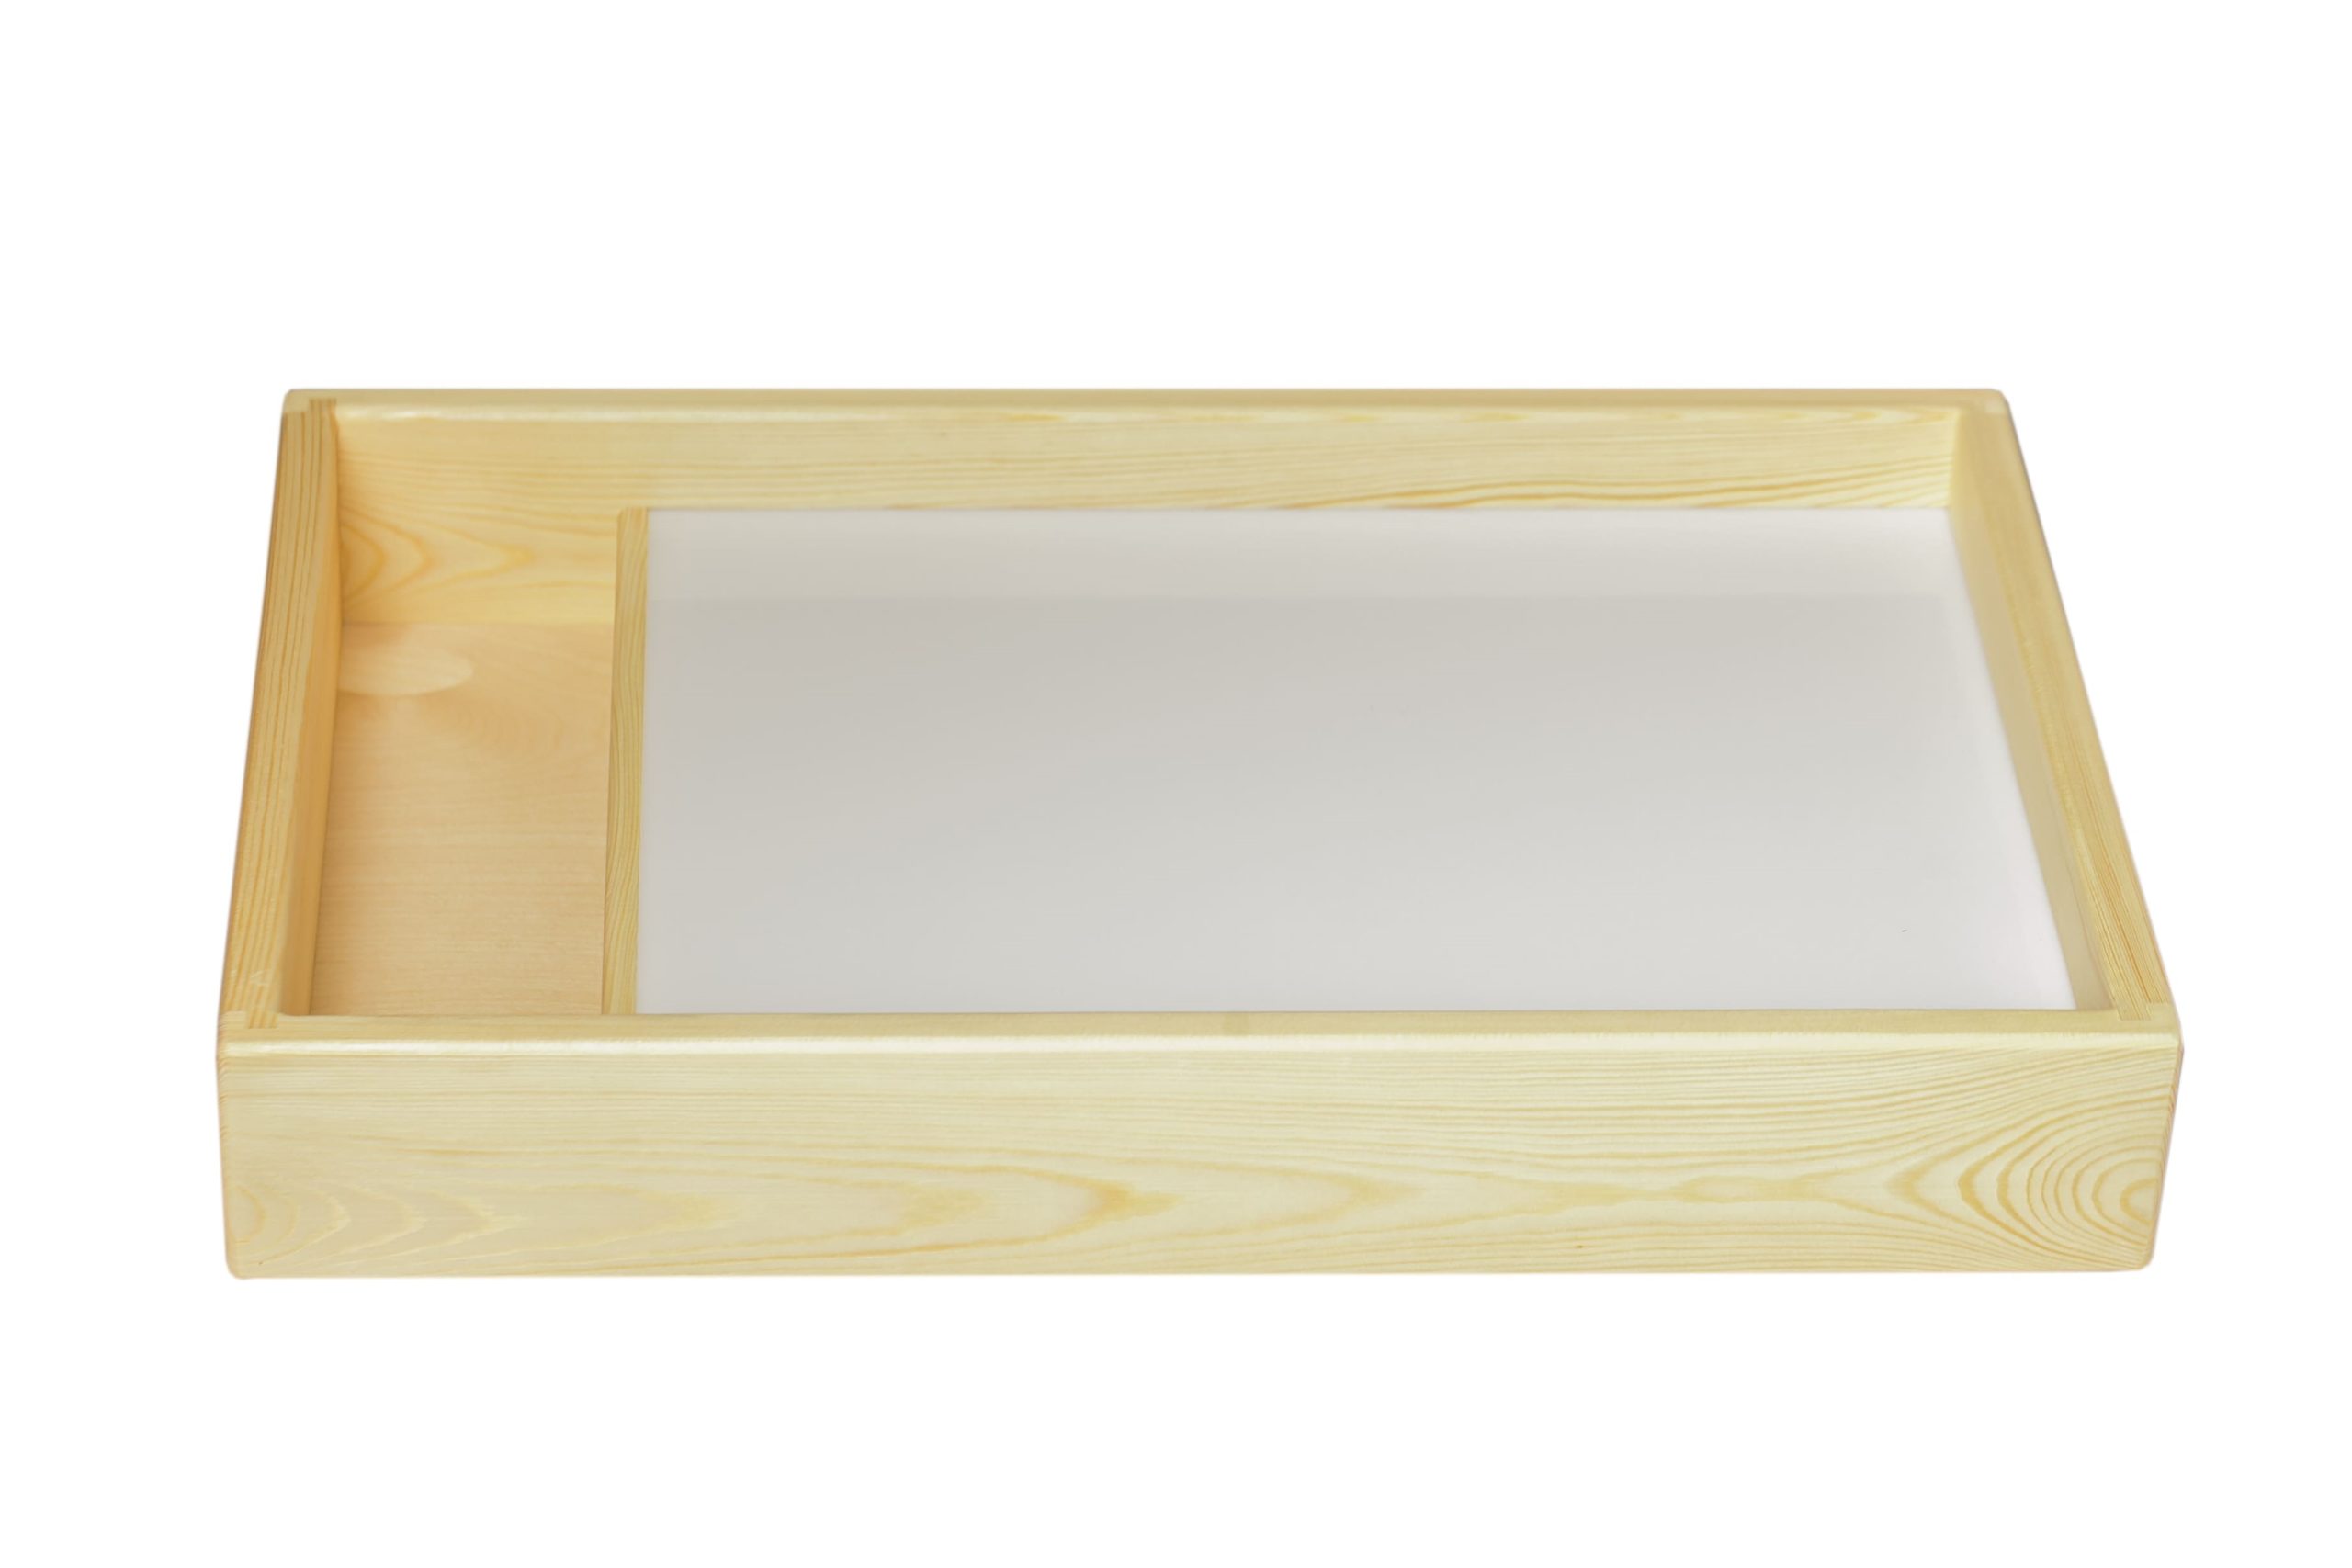 Product image for Стол для рисования песком с отсеком, белая подсветка